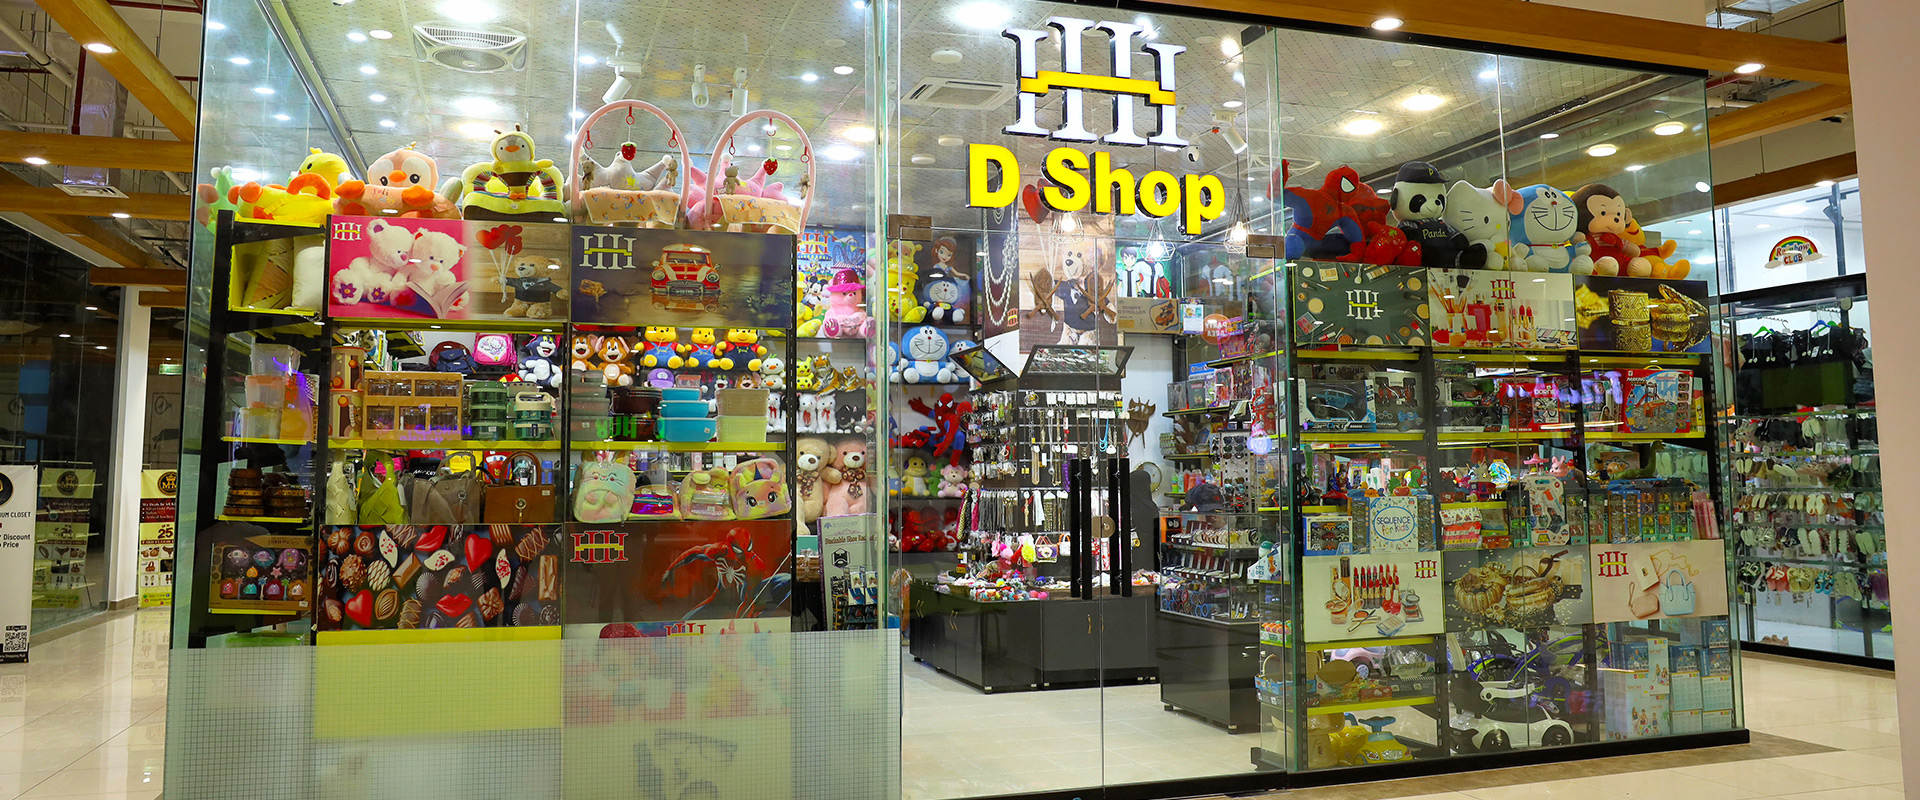 HHH-D-Shop-1